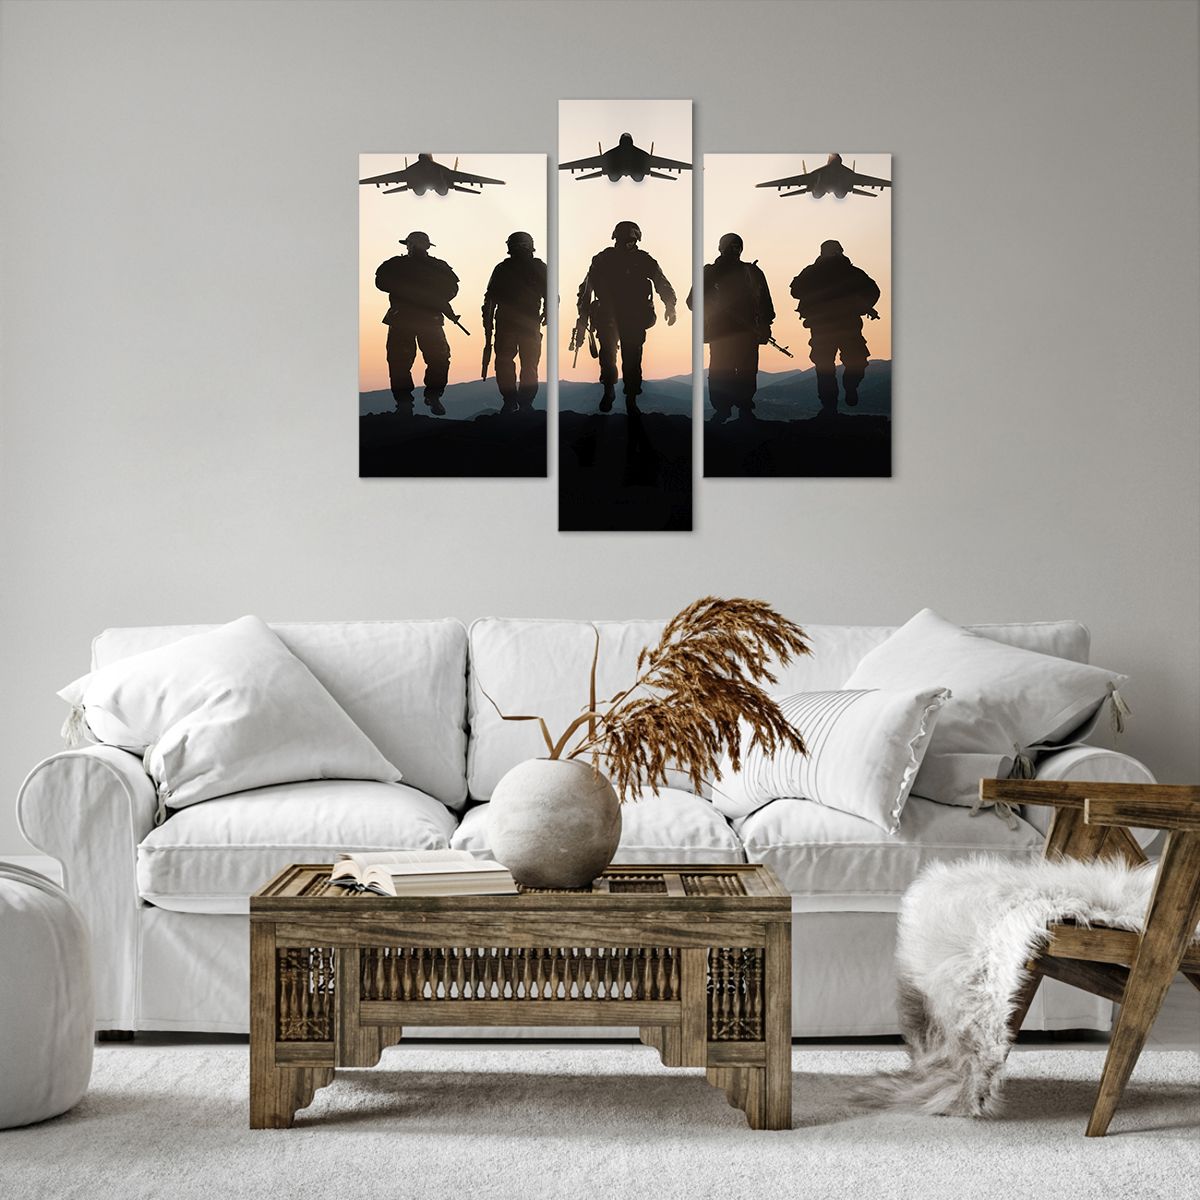 Obrazy na płótnie Militaria, Obrazy na płótnie Wojsko, Obrazy na płótnie Żołnierze, Obrazy na płótnie Samolot Wojskowy, Obrazy na płótnie Armia